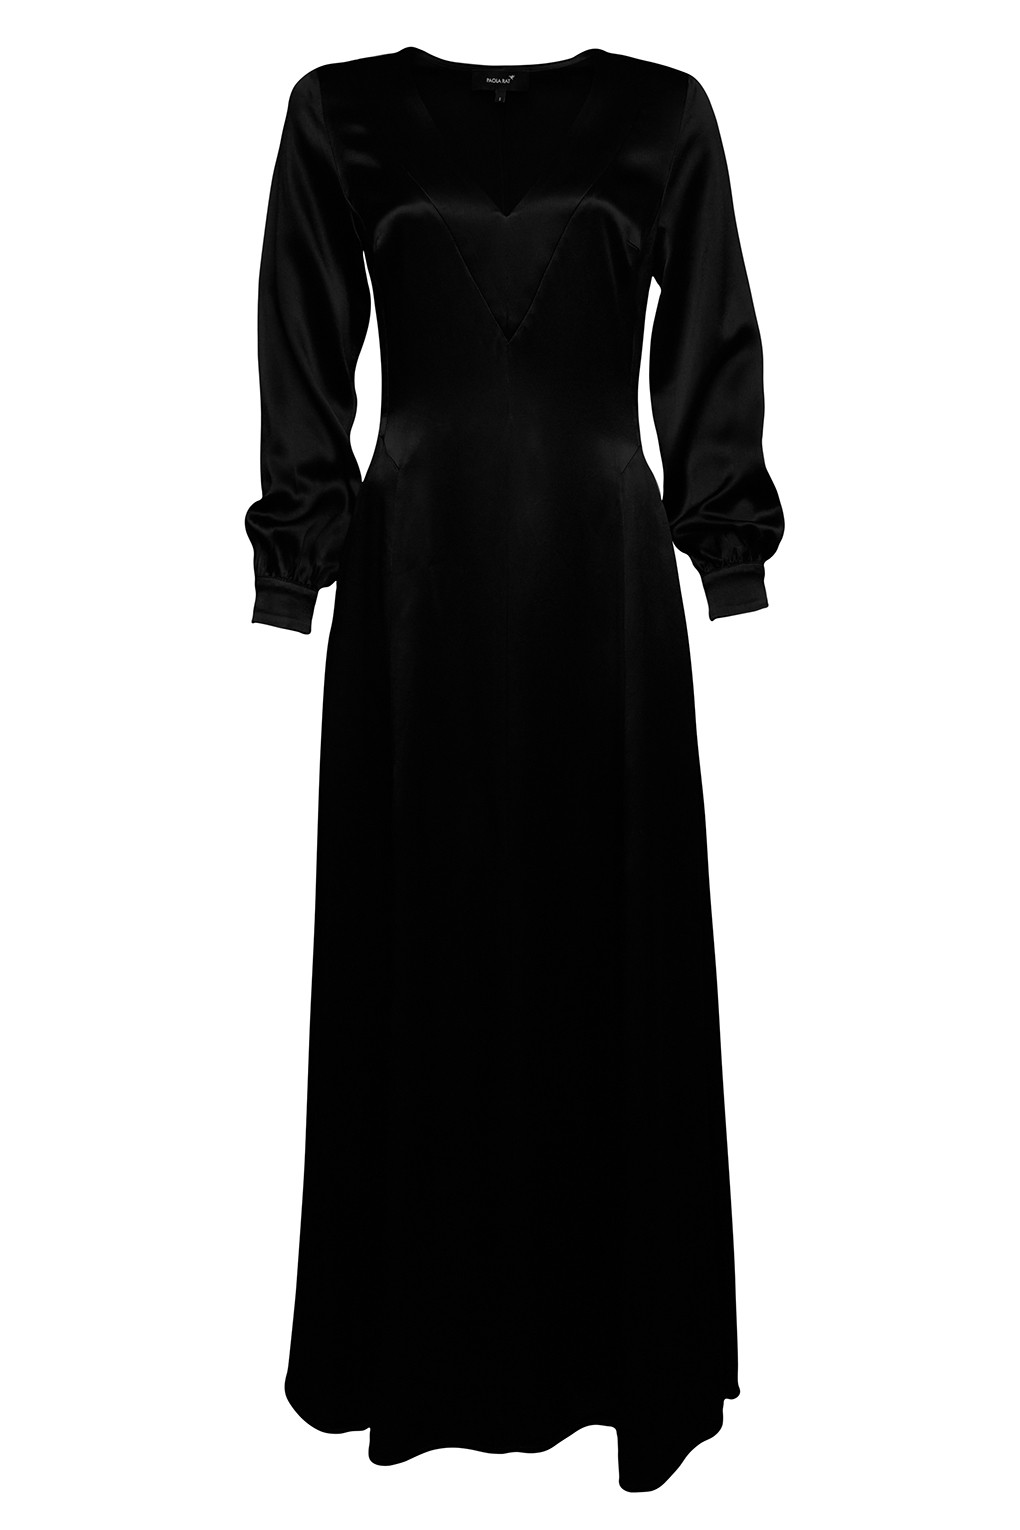 фото Платье женское paola ray pr121-3018 черное xs